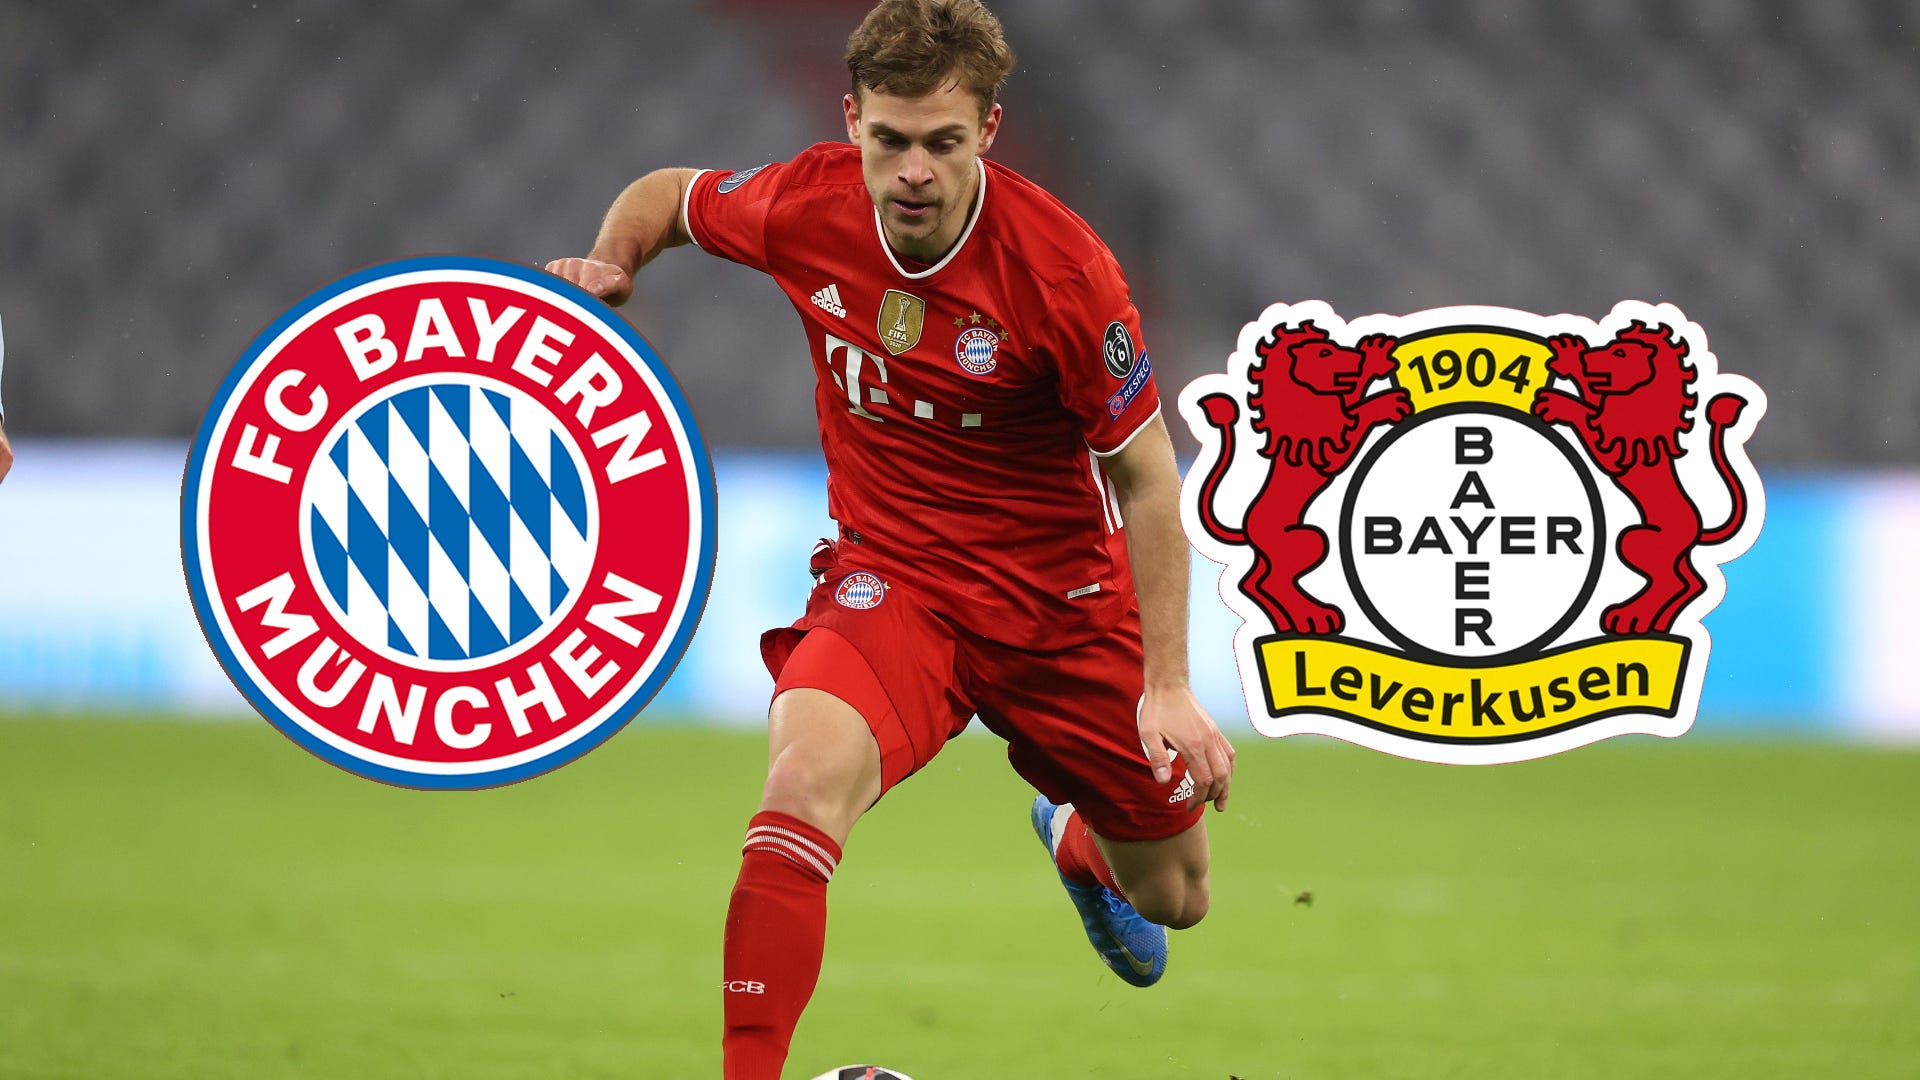 Bayer Leverkusen - FC Bayern München heute live TV, LIVE-STREAM, LIVE-TICKER, Aufstellungen